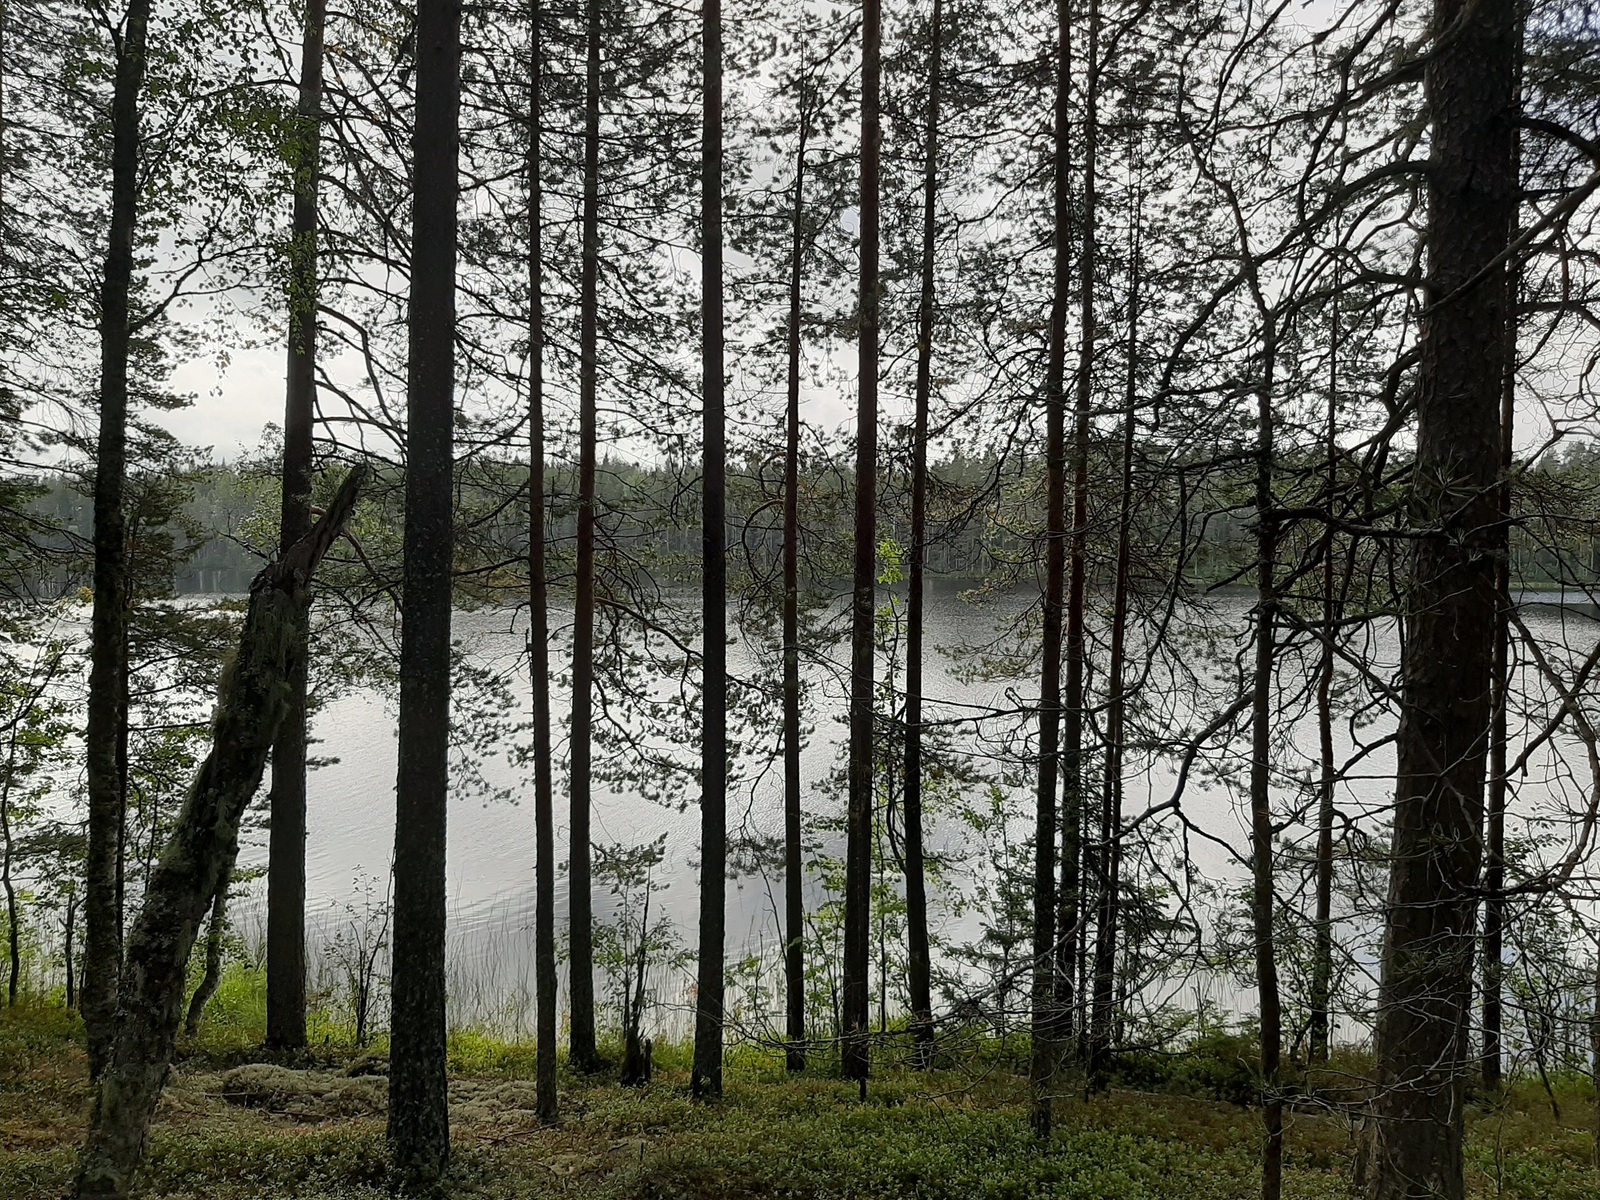 Loivassa rinteessä kasvavan mäntyvaltaisen metsän takana avautuu järvimaisema.